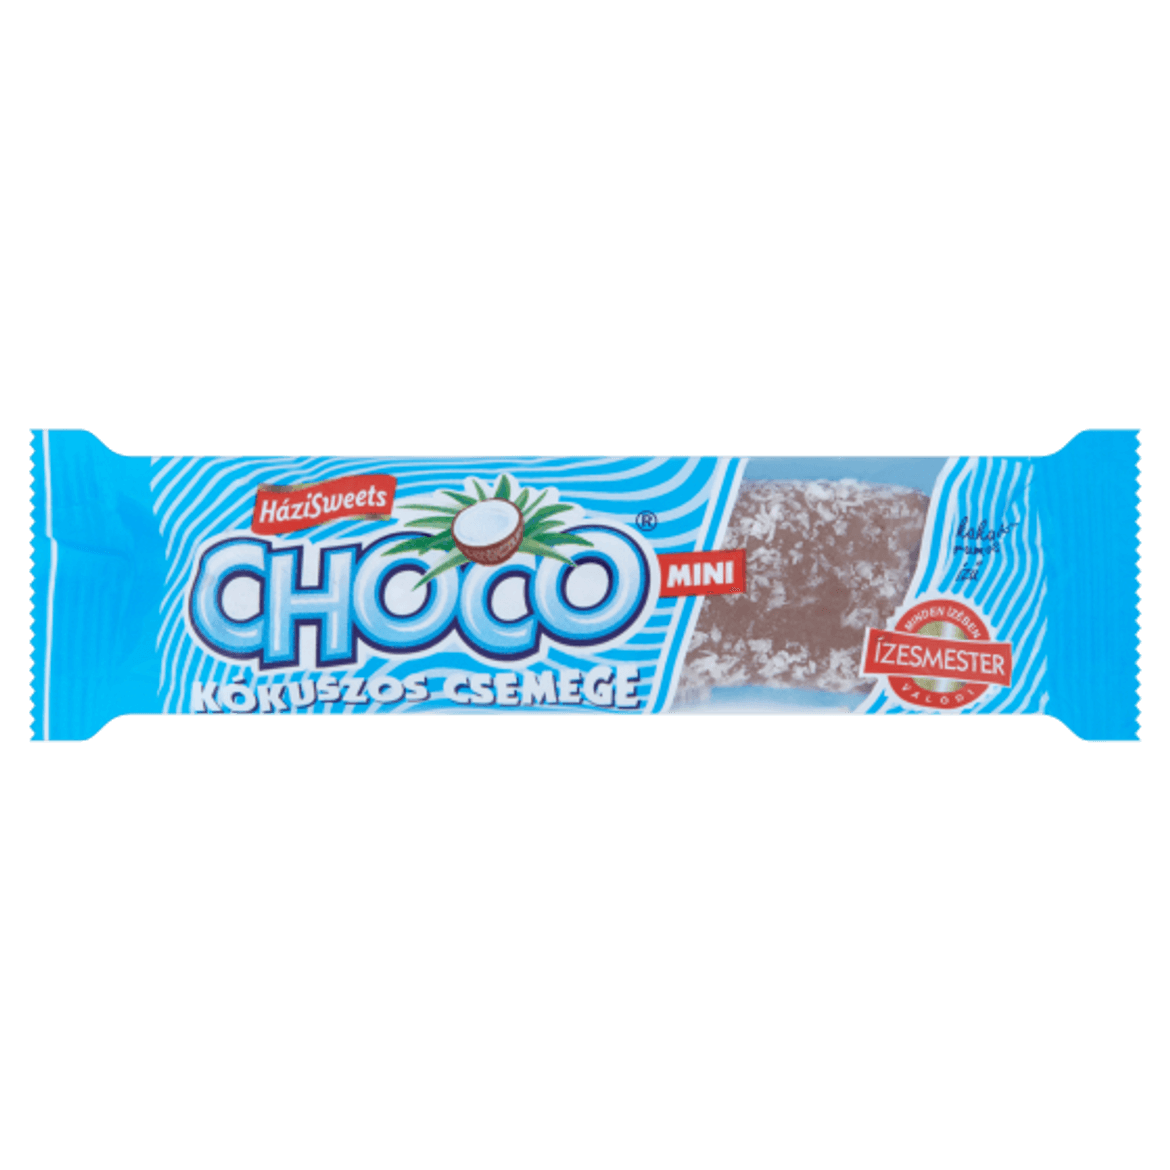 Choco kókuszos csemege